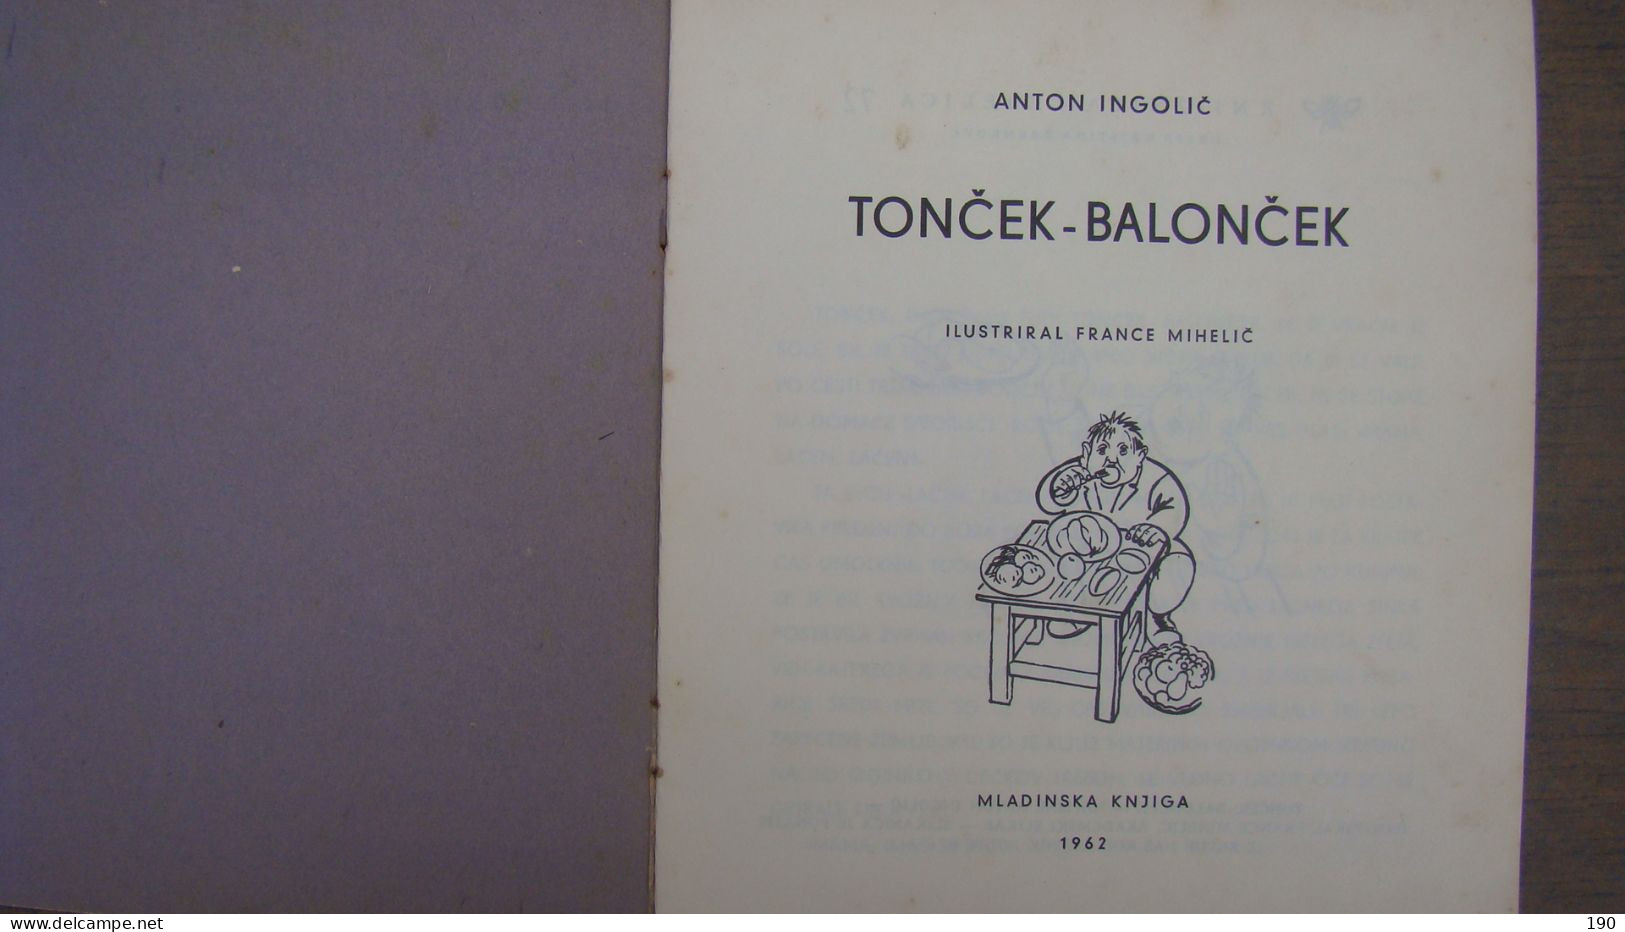 Toncek -baloncek (Anton Ingolic),Illustrated:France Mihelic - Slav Languages